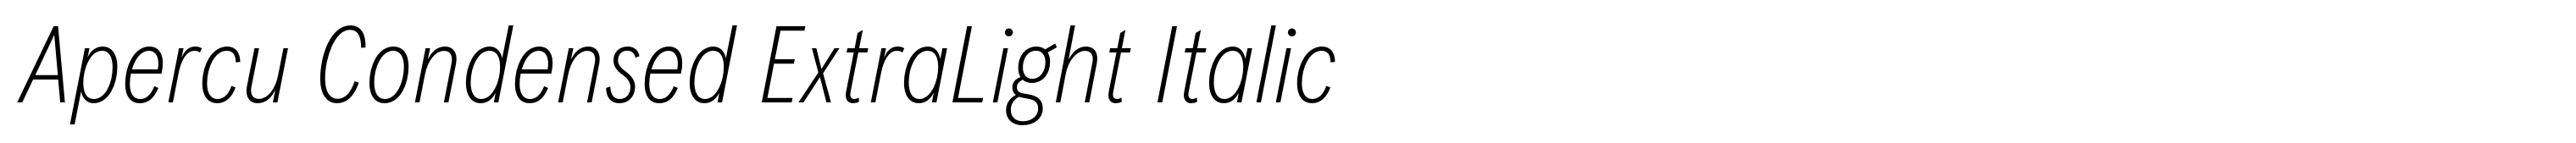 Apercu Condensed ExtraLight Italic